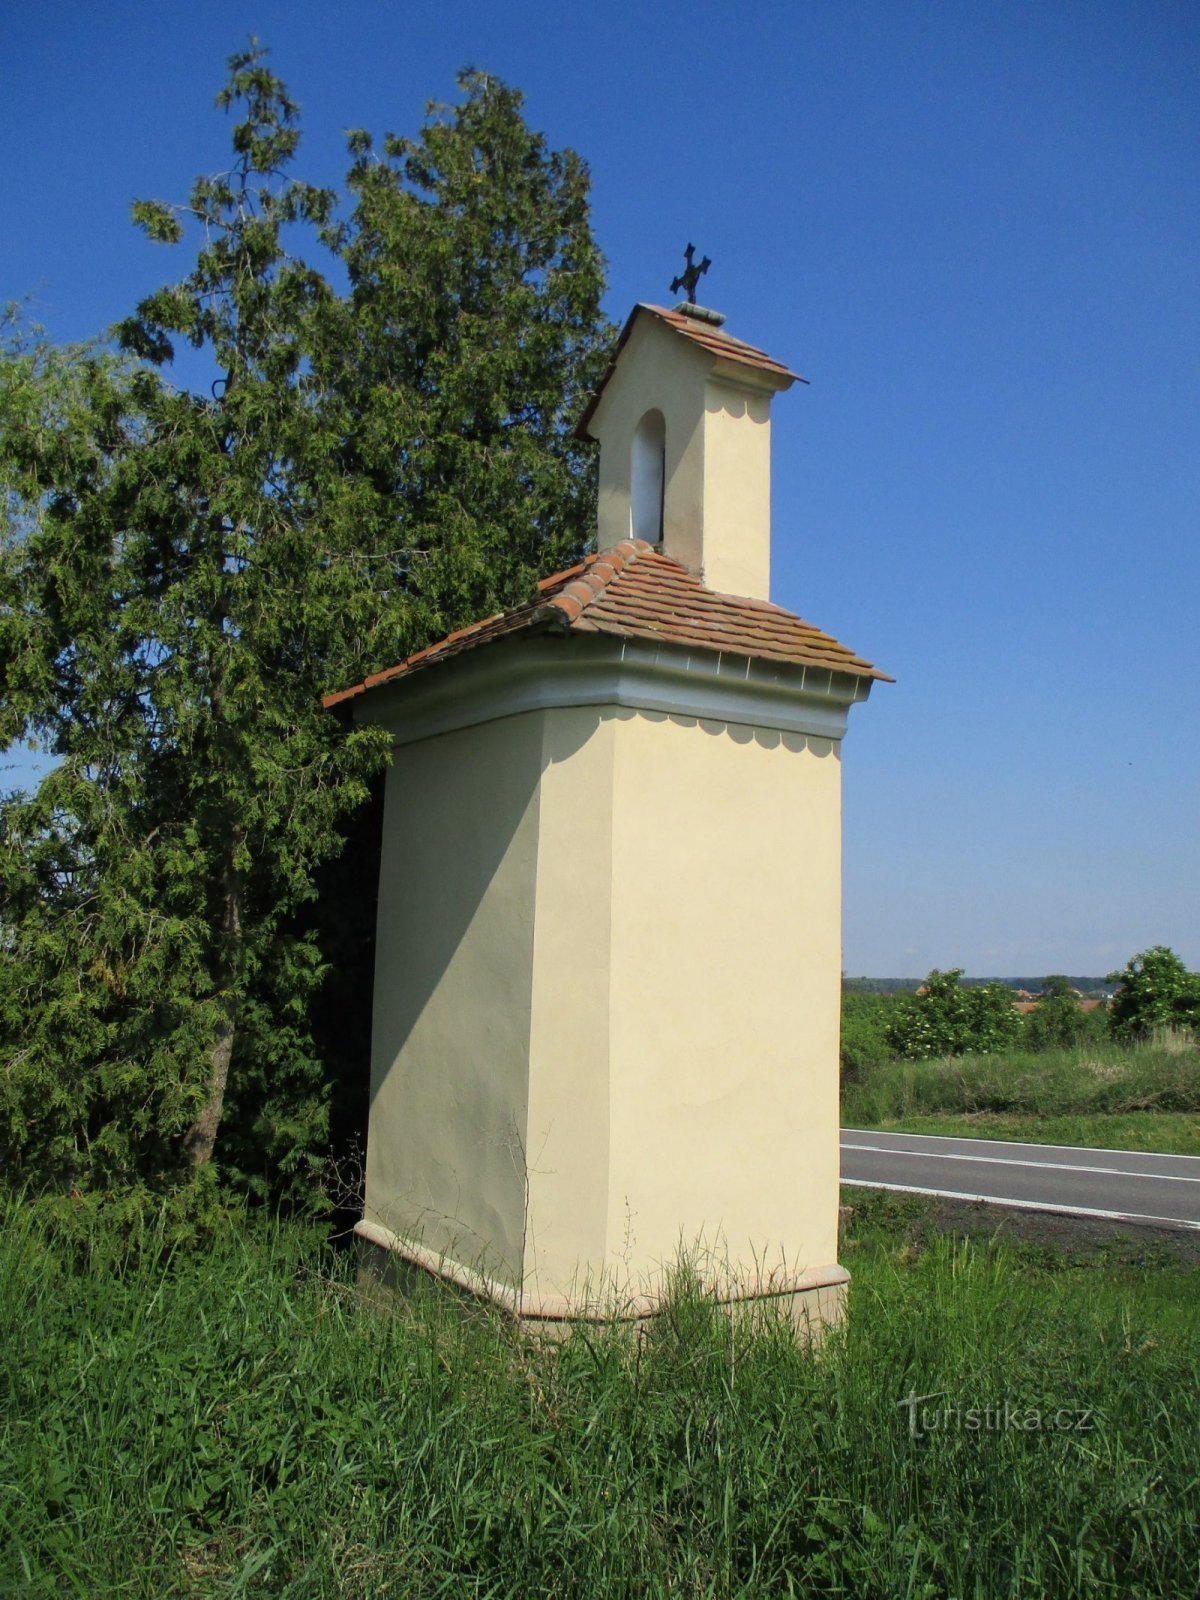 Nhà nguyện bên đường từ Holice (Horní Ředice, 16.5.2020/XNUMX/XNUMX)